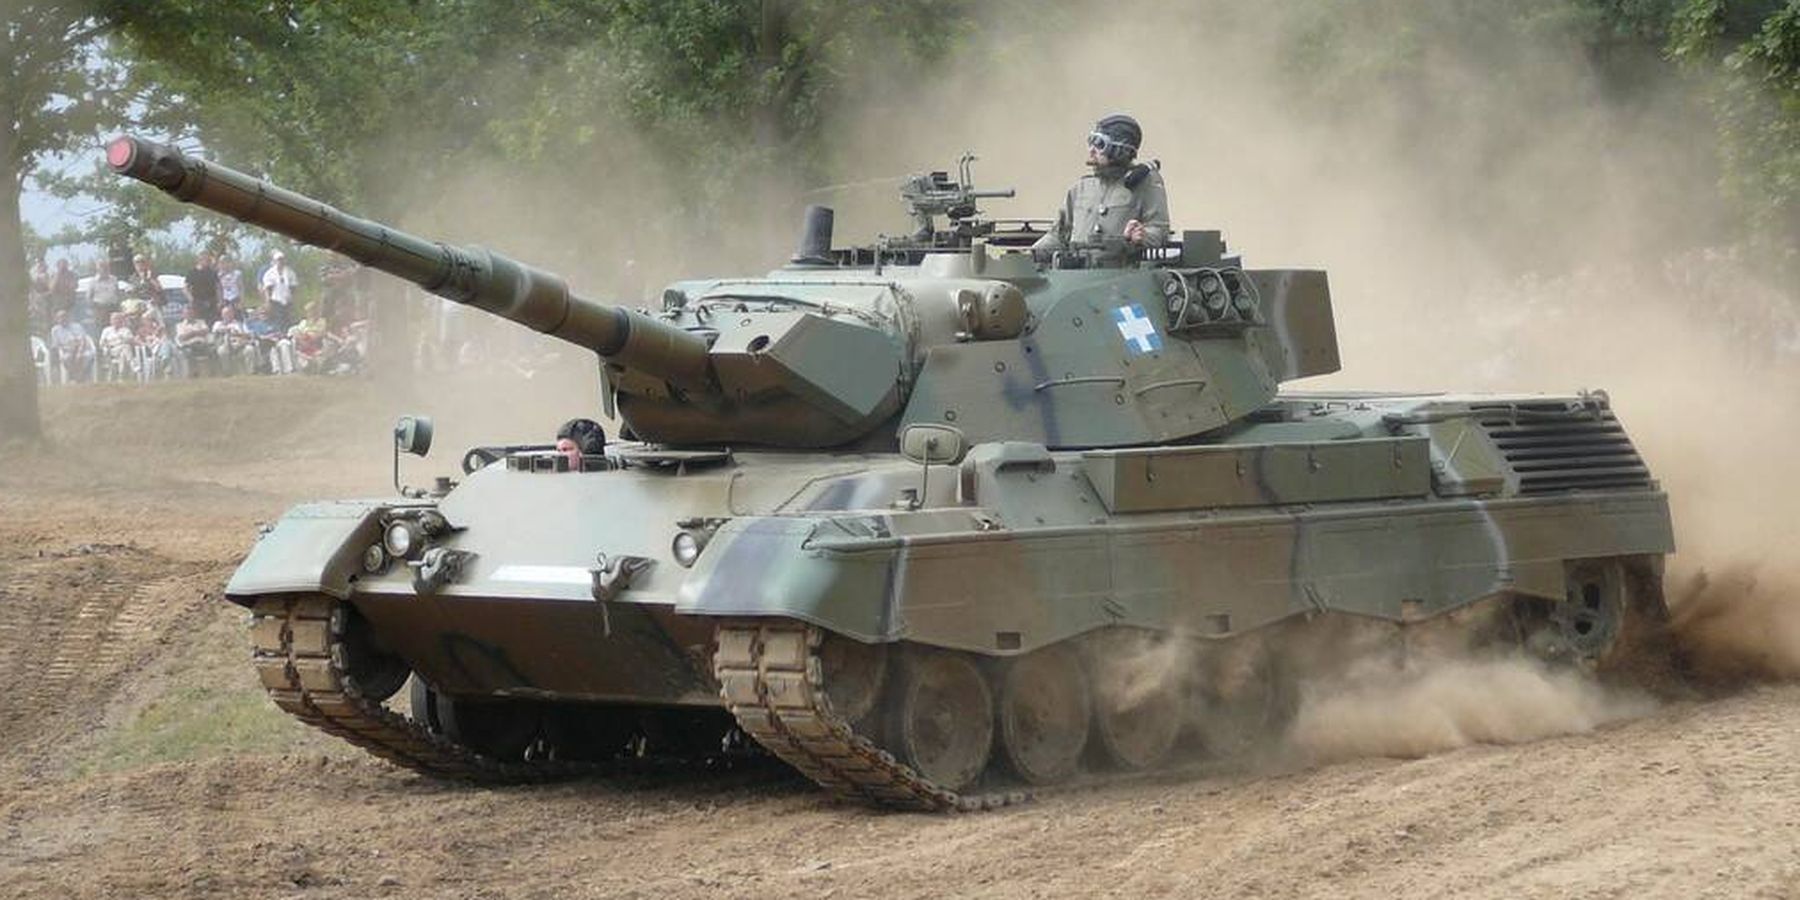 Leopard 1A5 del ejército griego. (Adamicz)